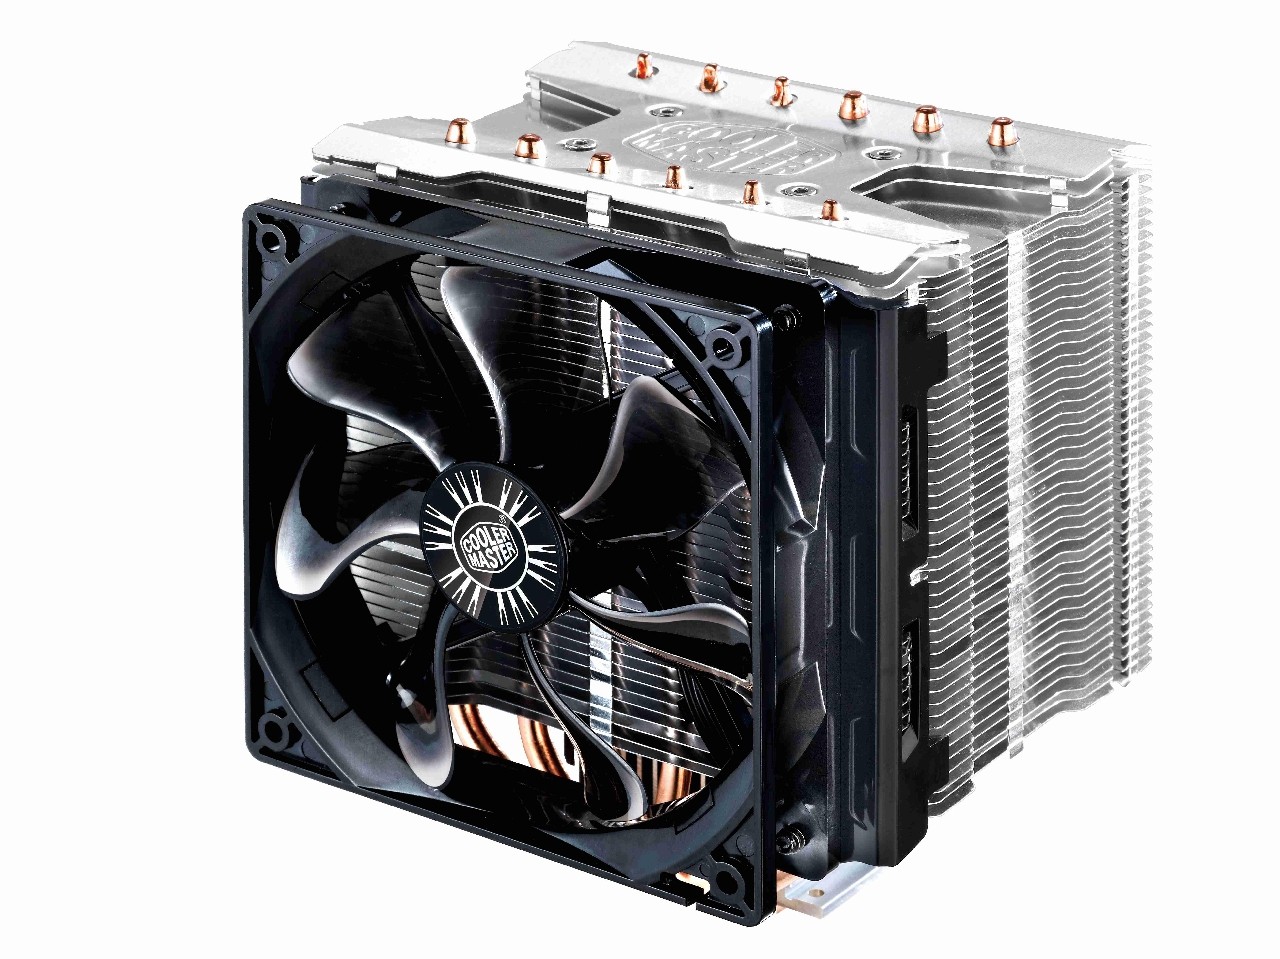 Nowe chłodzenie CoolerMaster dla procesorów Intel i AMD